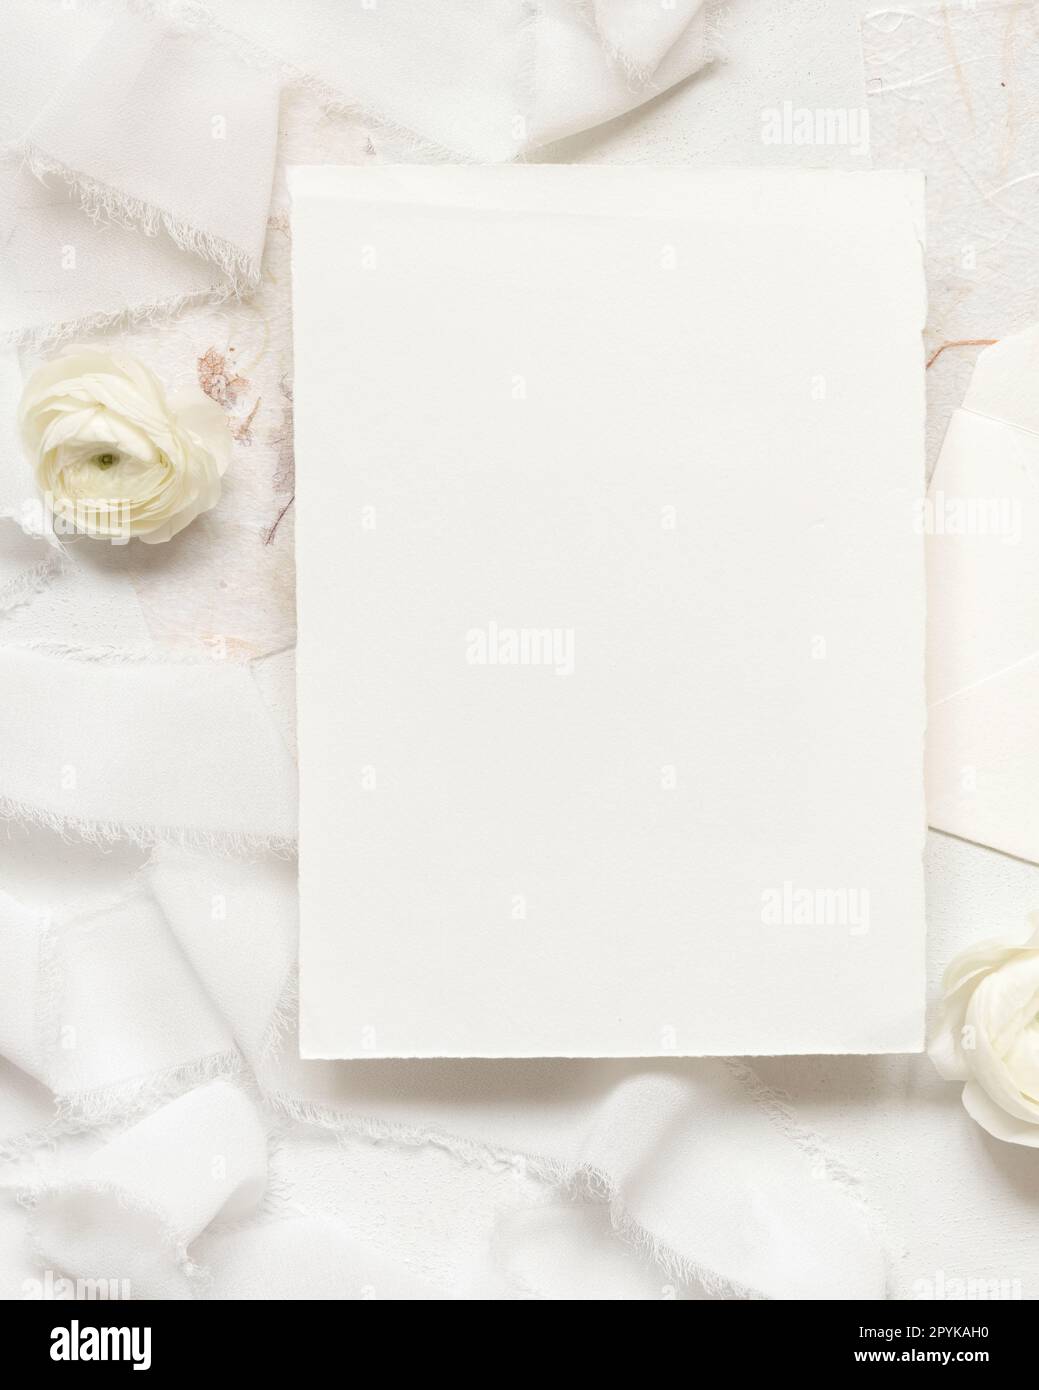 Leere Karte neben cremefarbenen Rosen und weißen Seidenbändern, Draufsicht, Hochzeitsmodell Stockfoto